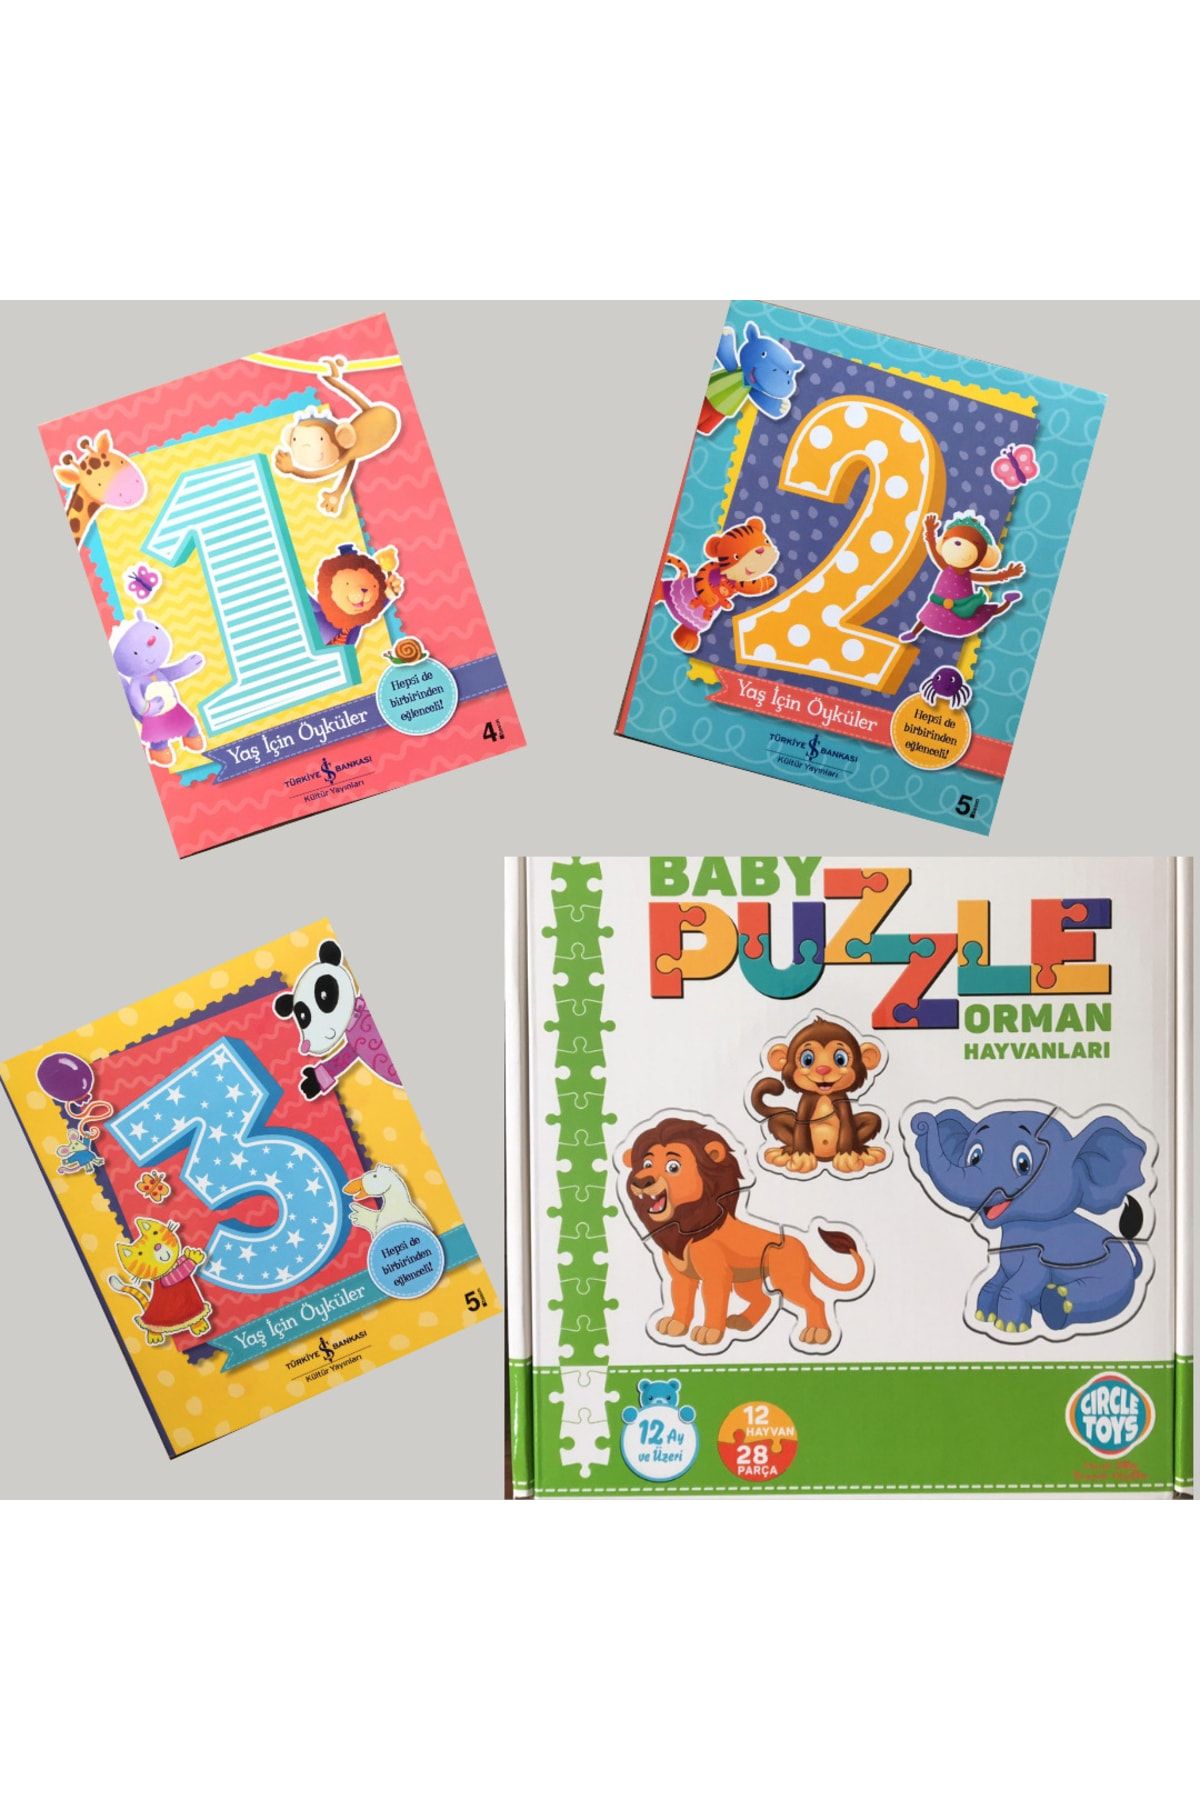 Circle Toys 0-3 Yaş Babypuzzle Orman Hayvanları Görsel Zeka Dikkat Ve Algı Oyunu & 1-3 Yaş Için Öyküler Seti